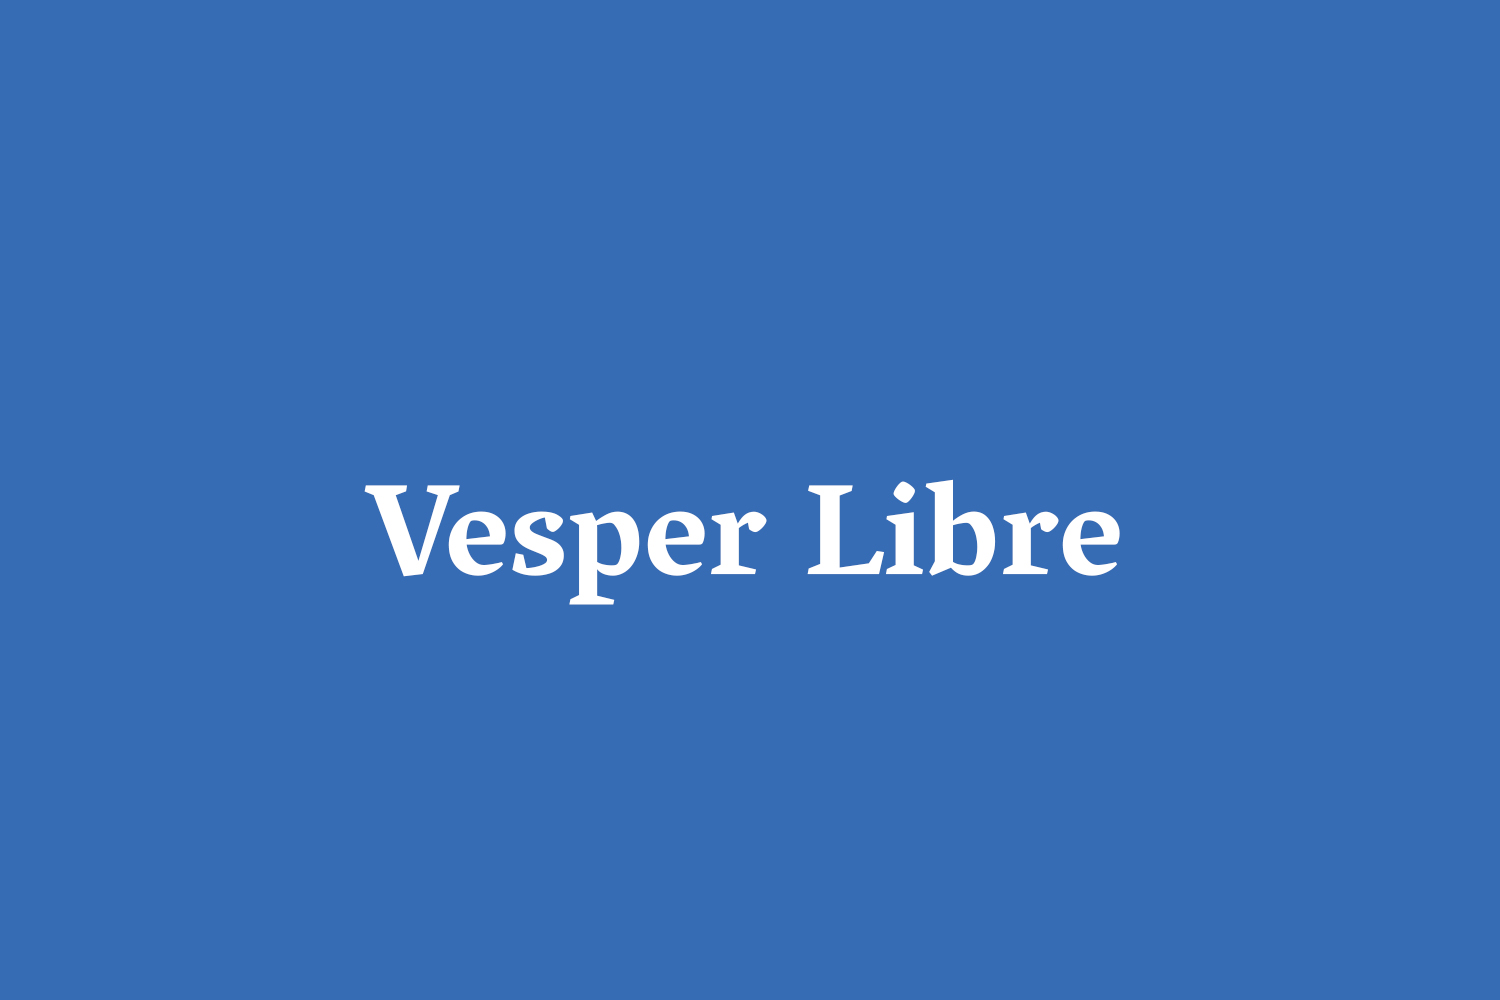 Vesper Libre